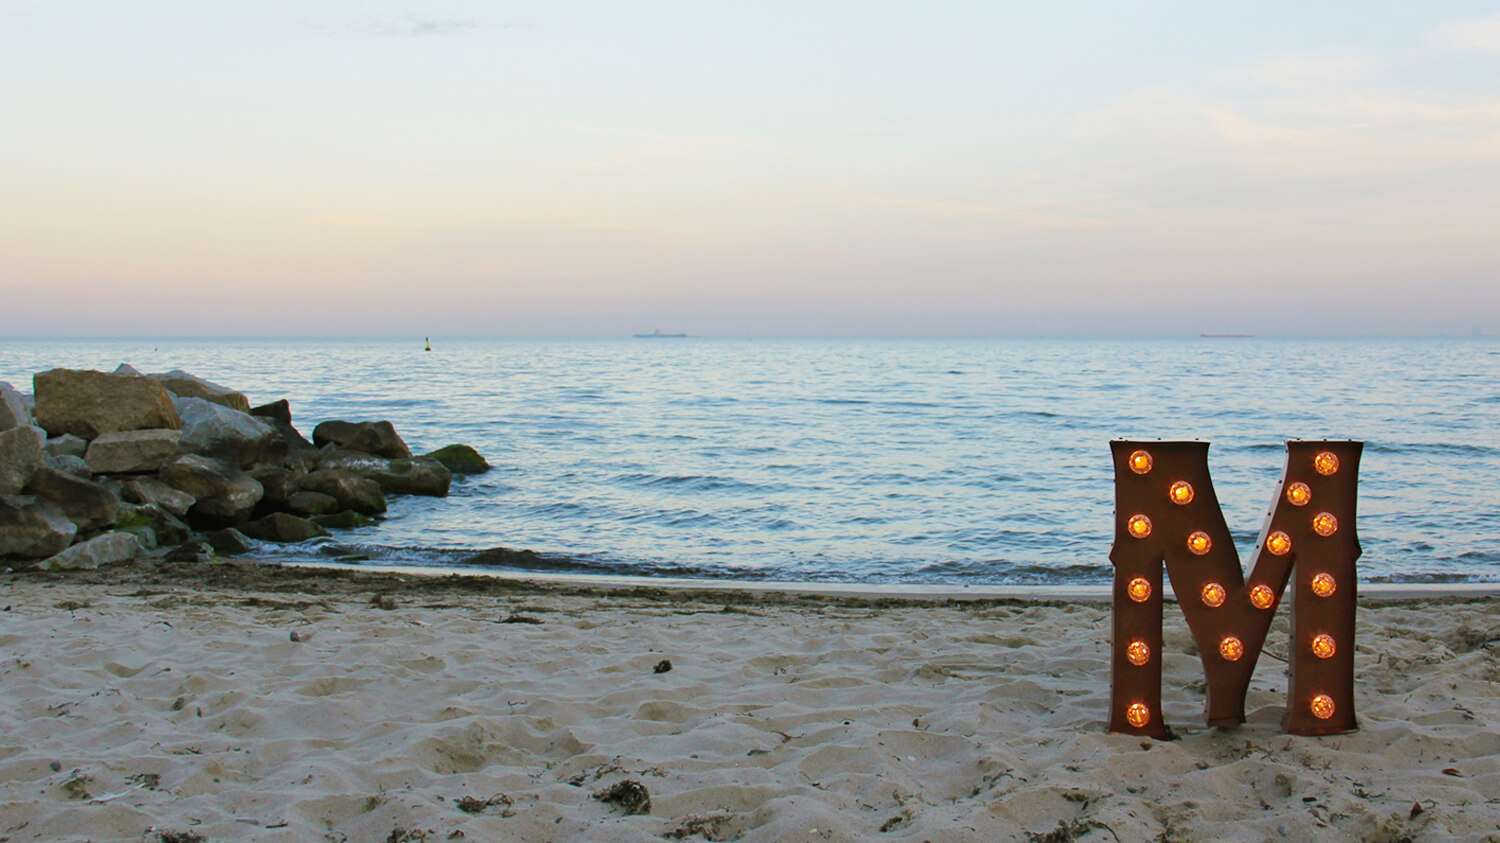 lettres avec ampoules - Lettrage spatial debout avec ampoules sur une plage